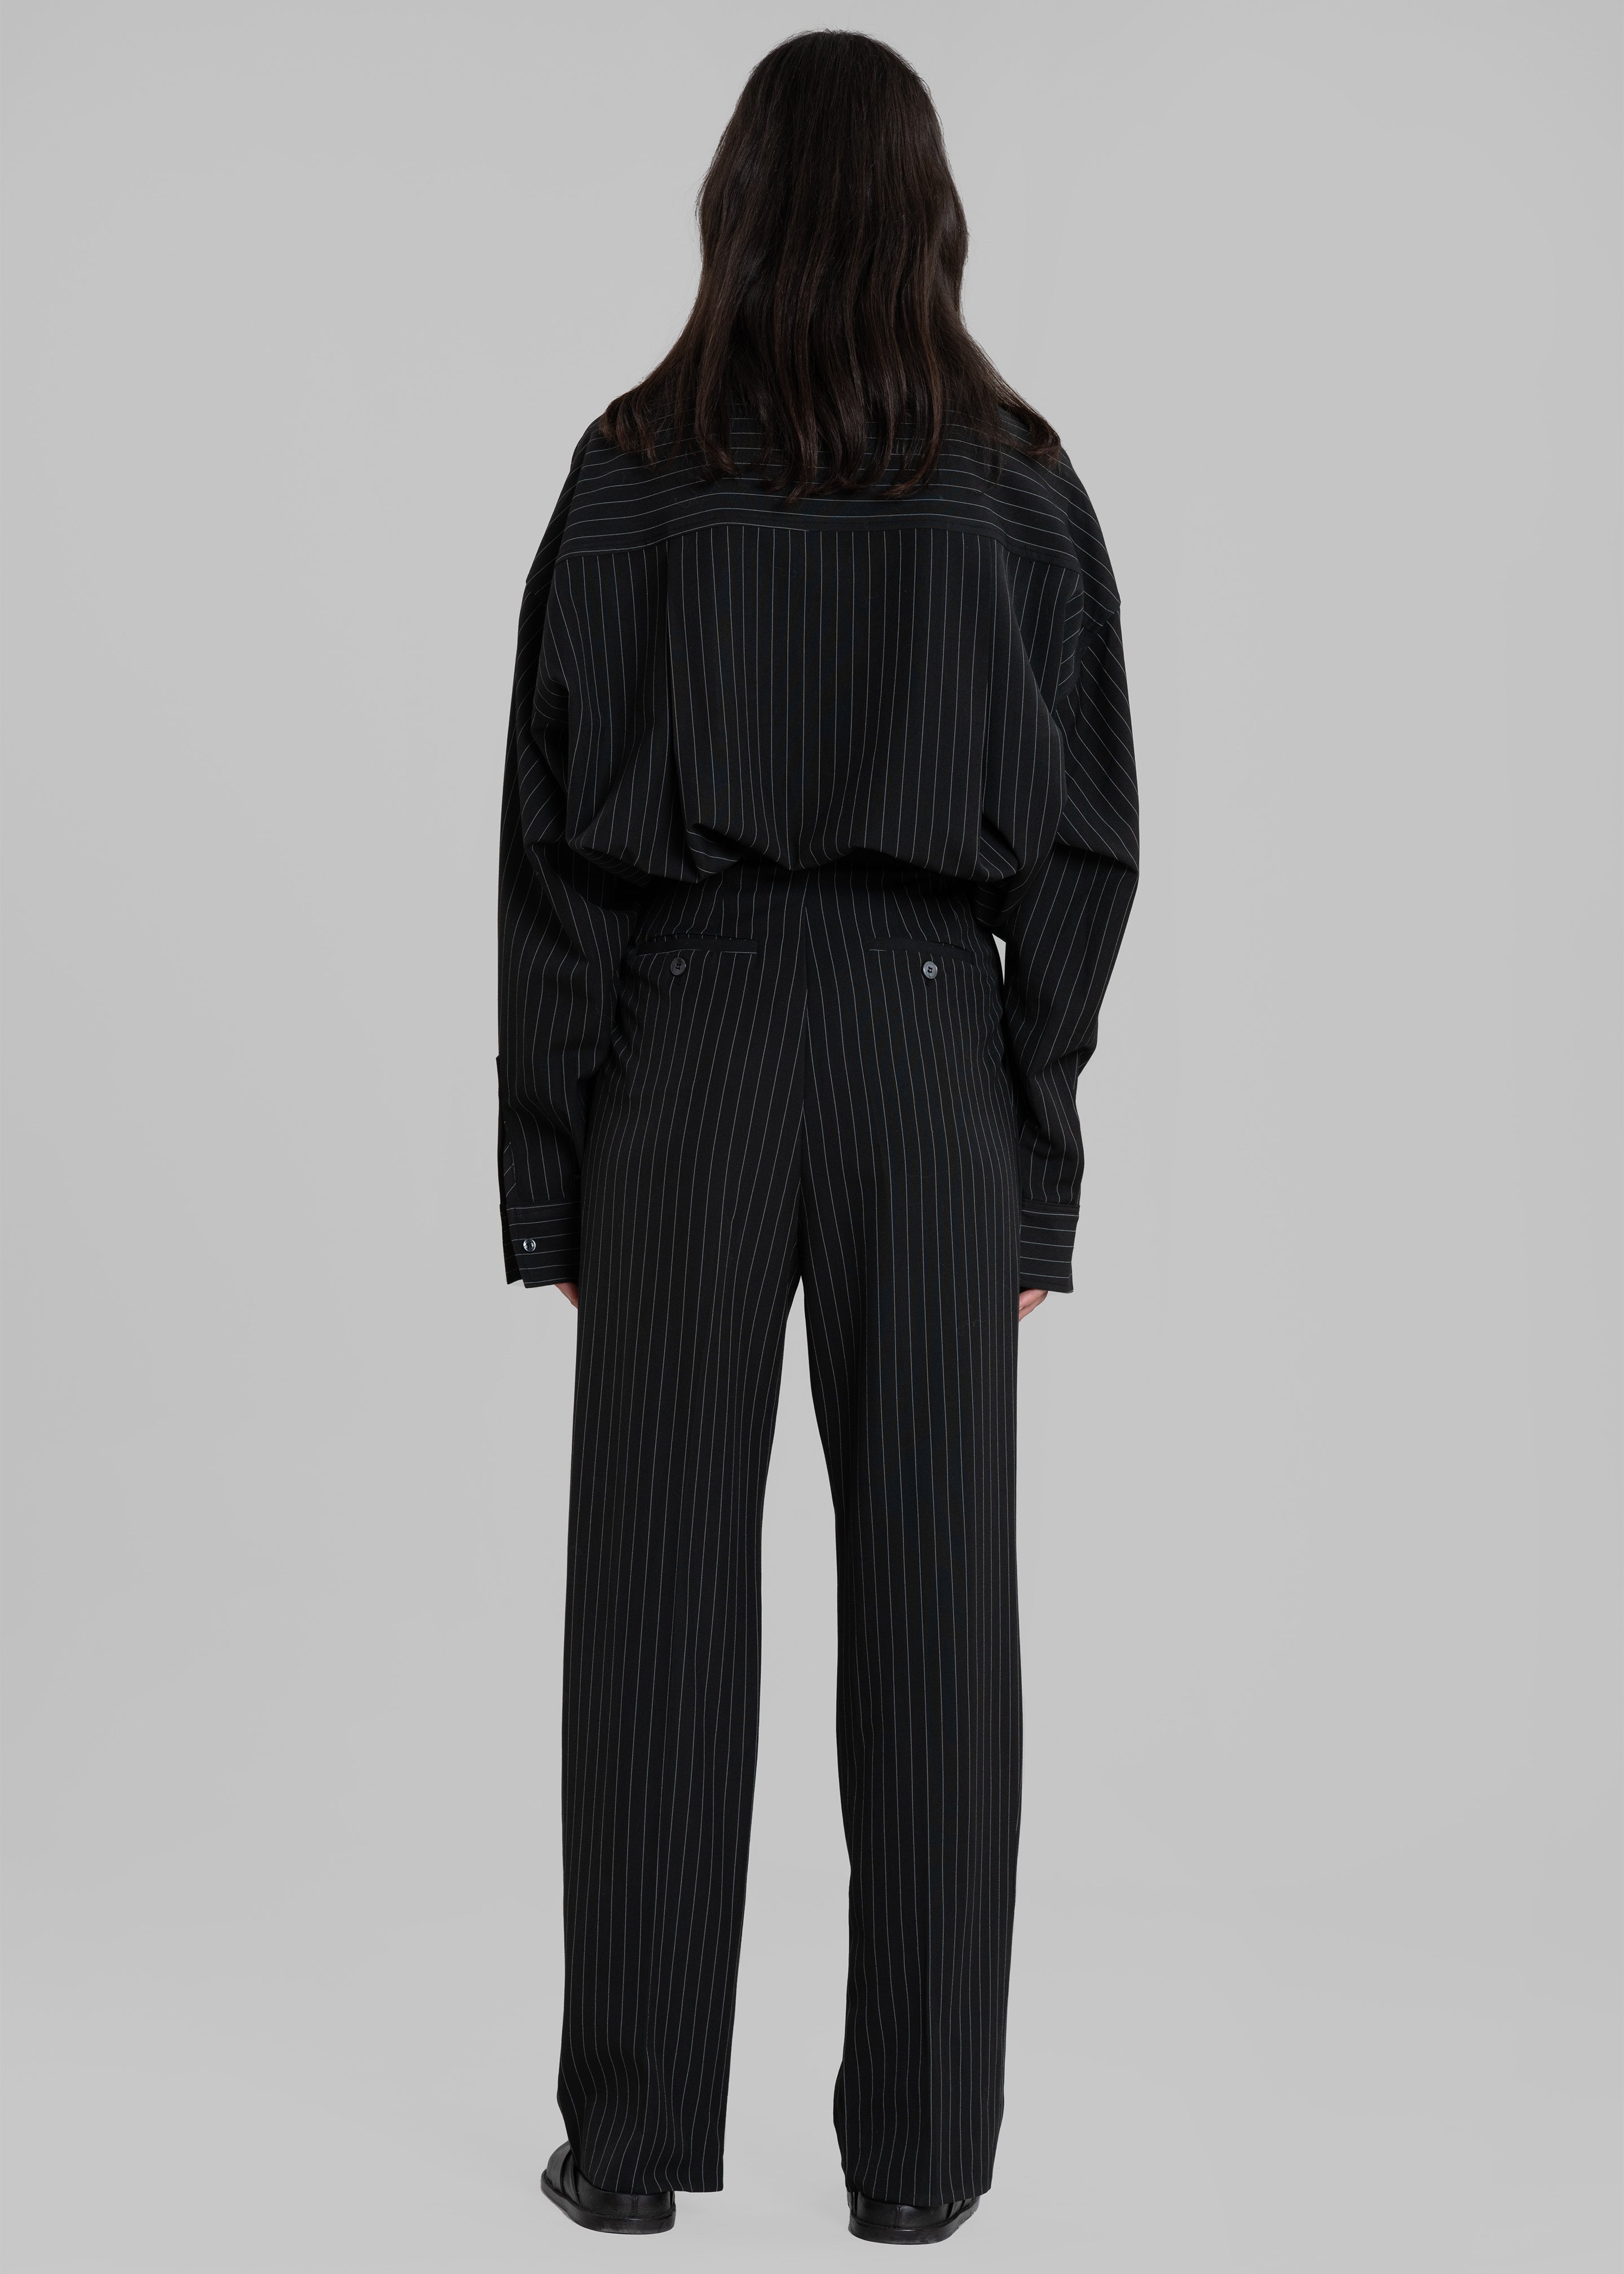 Bea Fluid Pinstripe Suit Pants - Black/White - 7